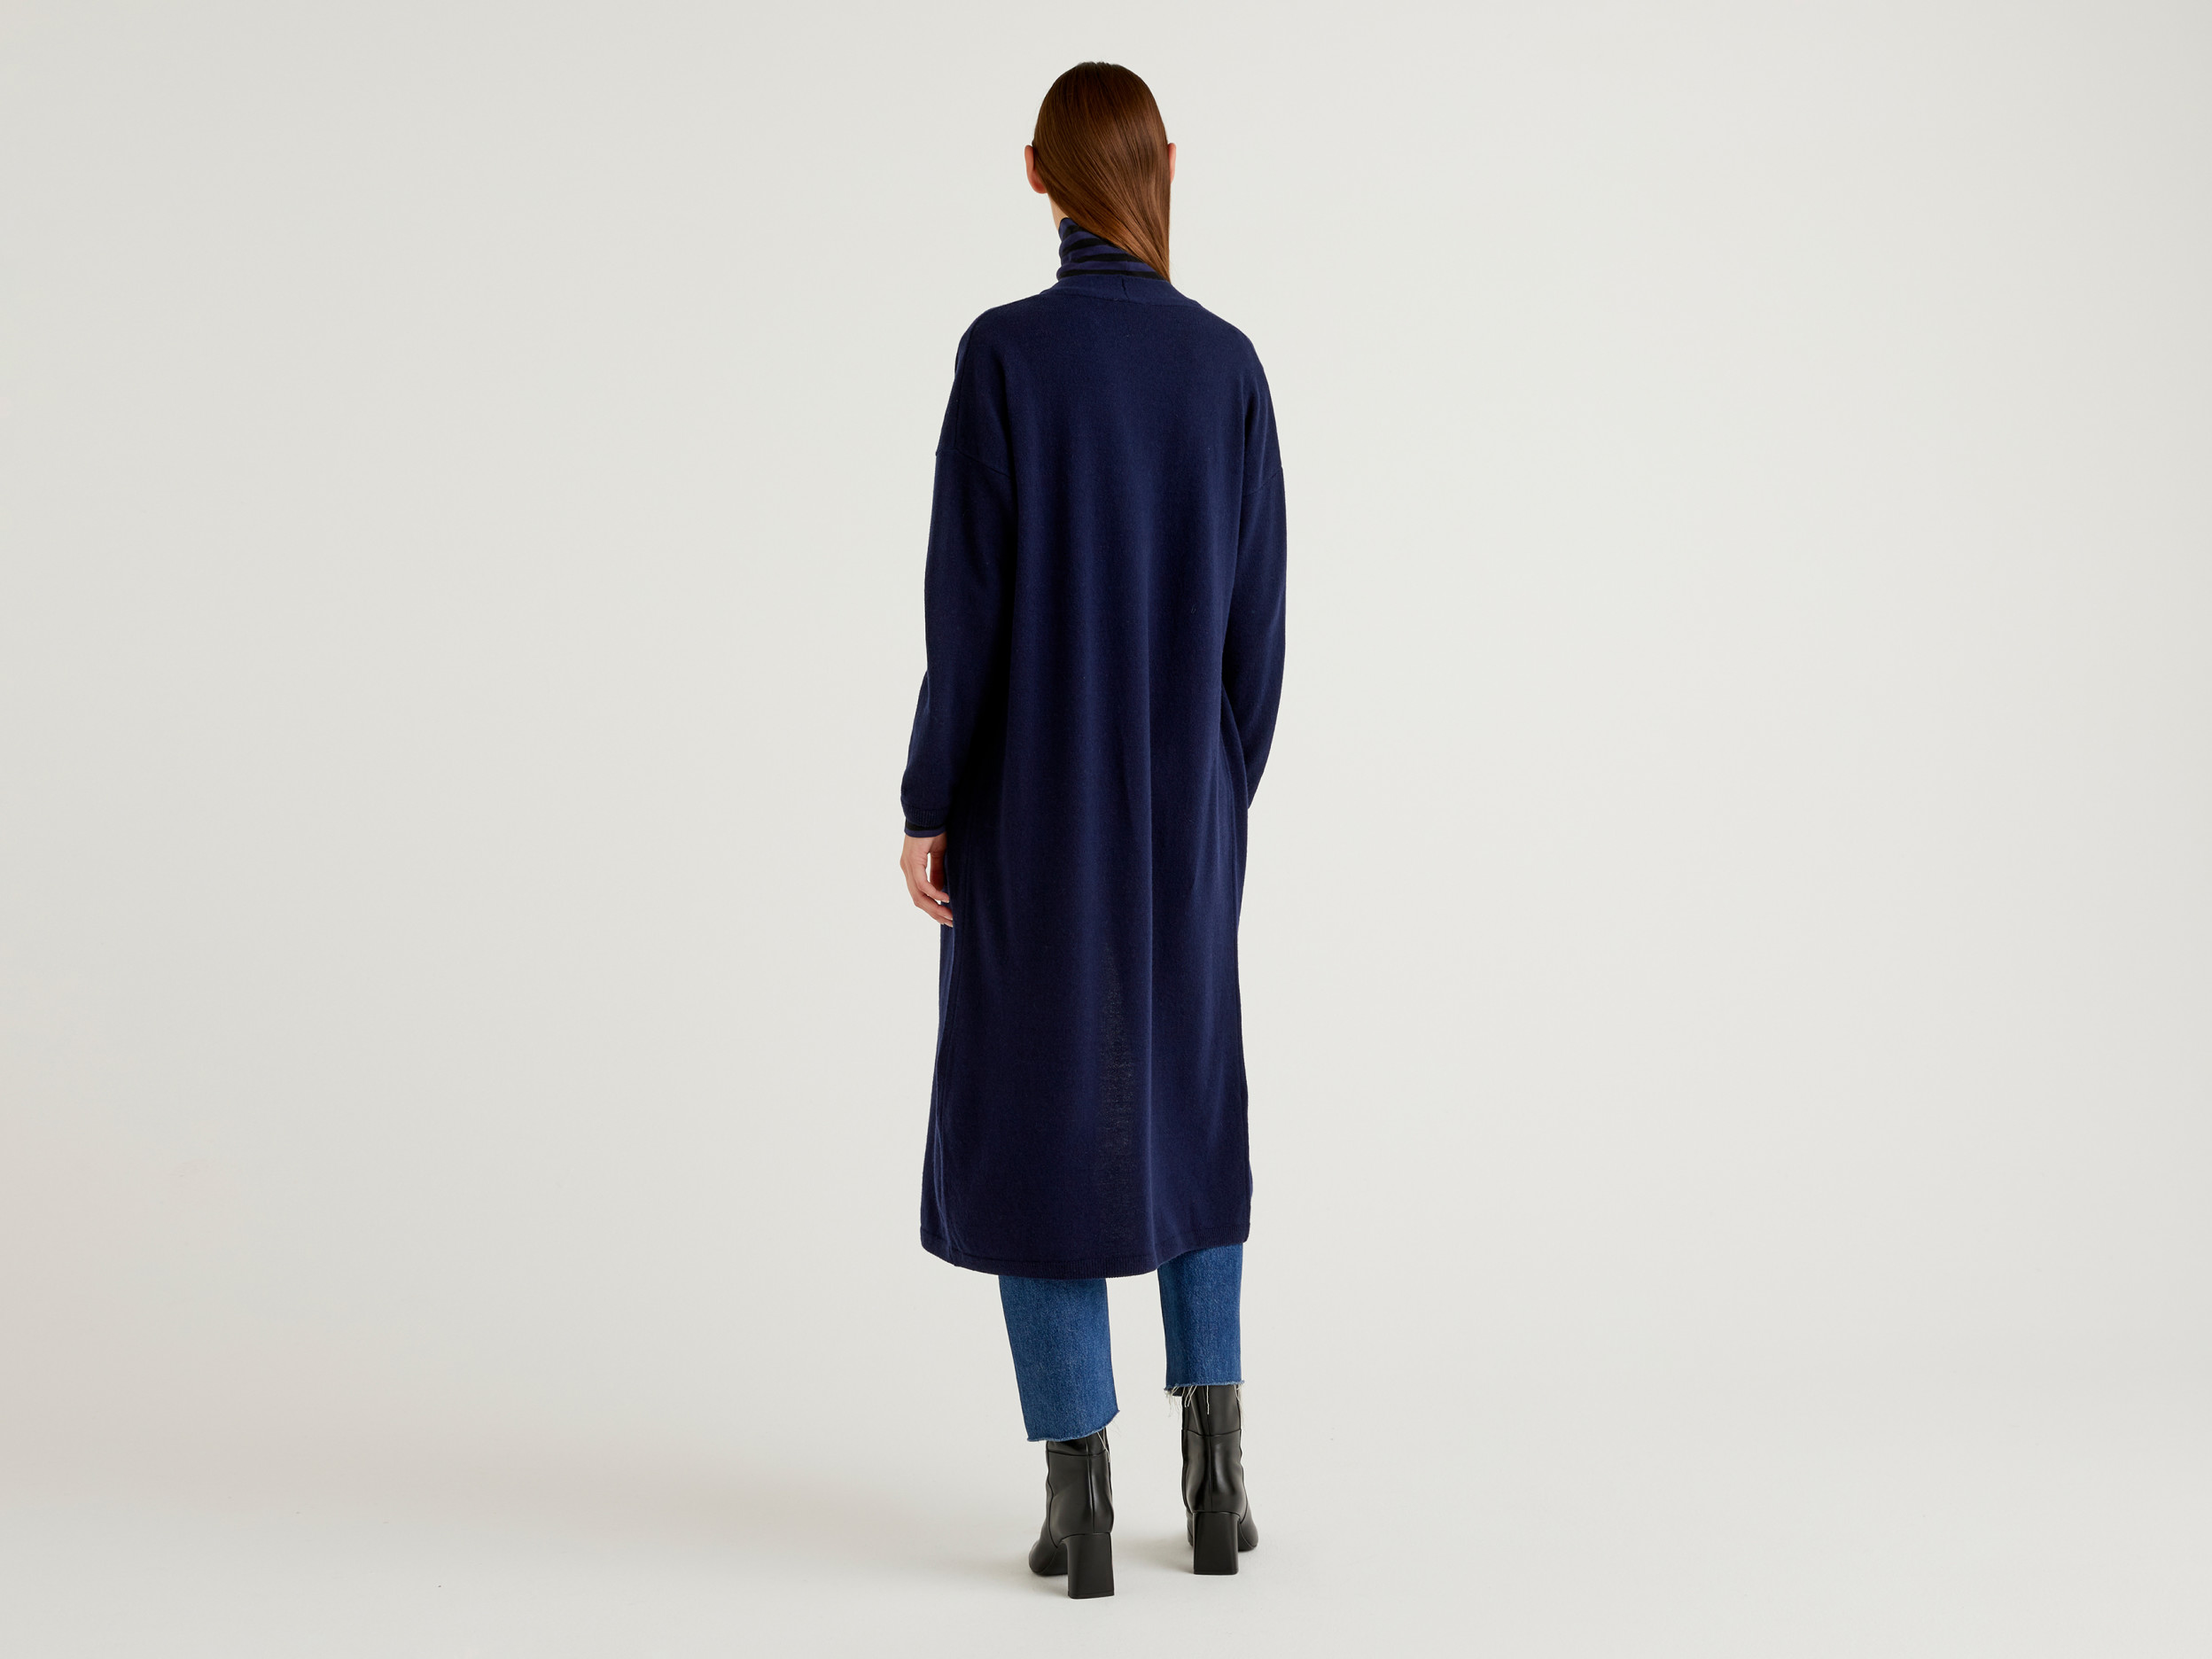 Benetton, Long Cardigan In Wool Blend, Taglia L-Xl, Dark Blue, Women